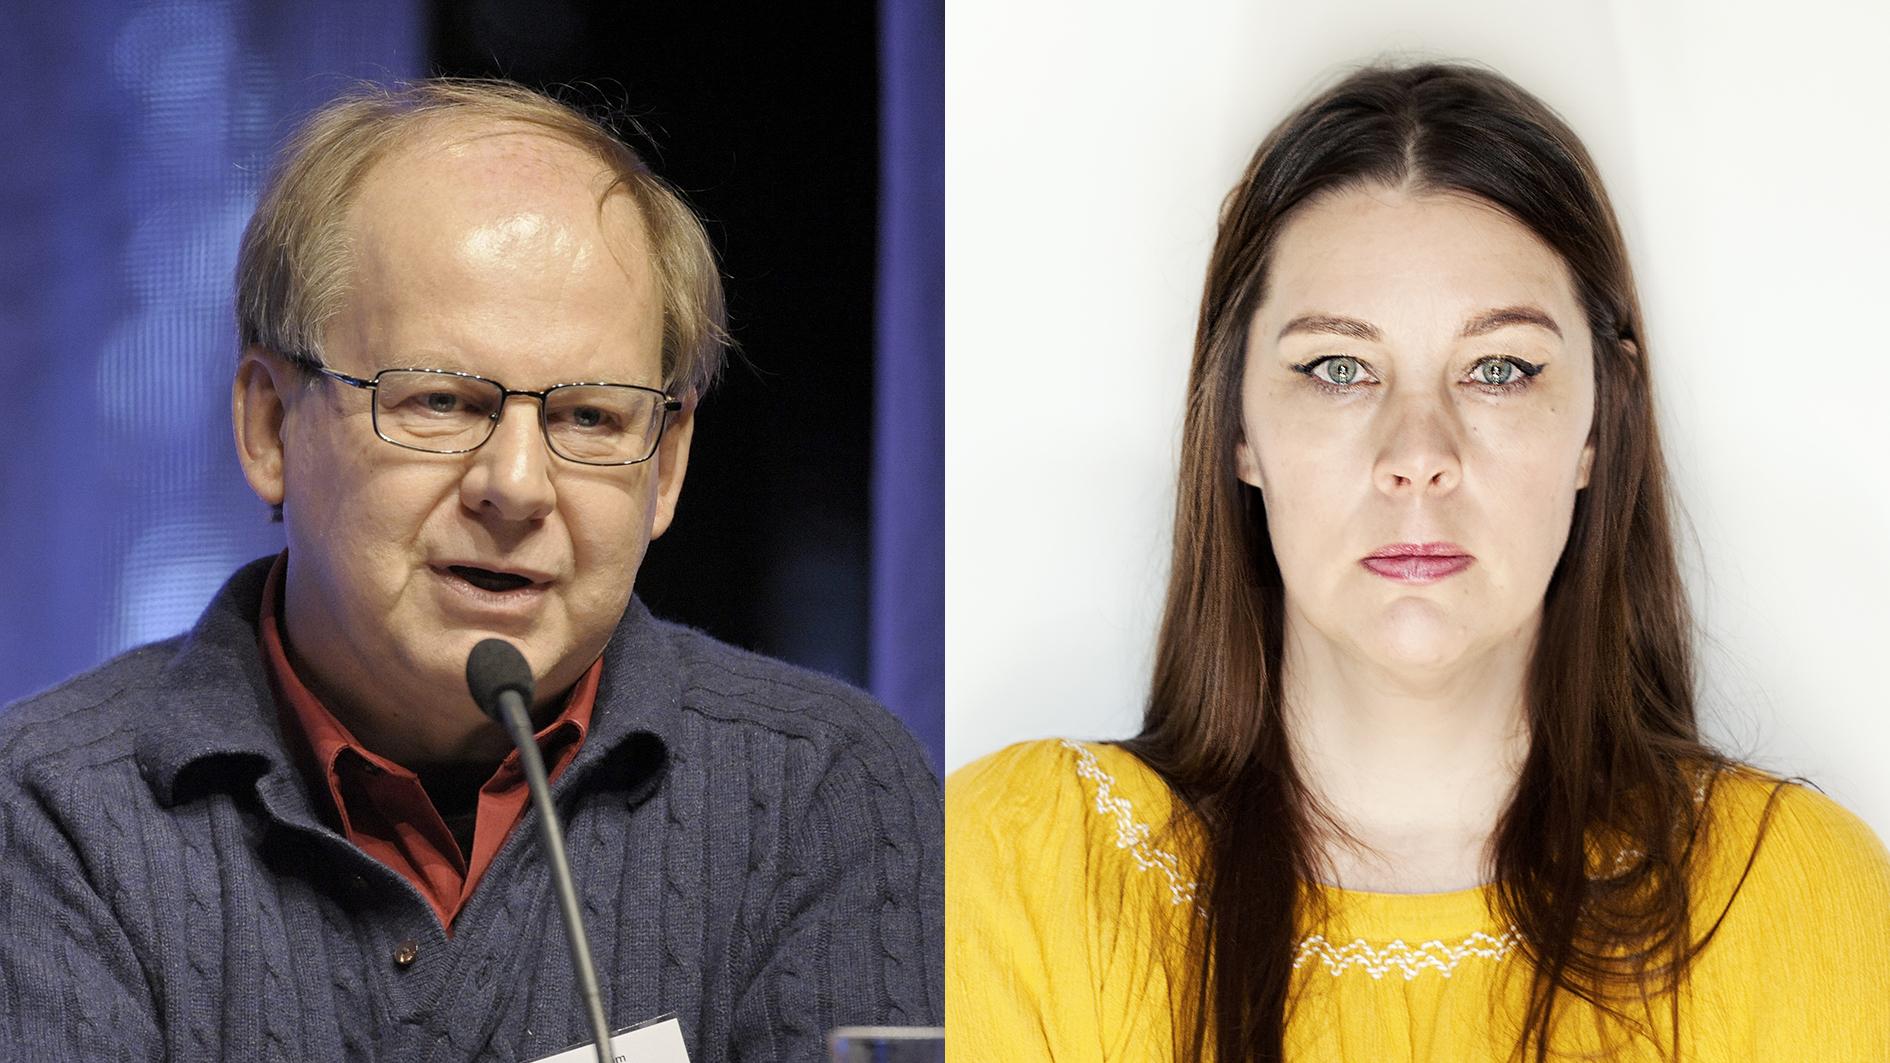 Hans Bergström kritiserar Jenny Maria Nilssons artikel i Aftonbladet om svensk skola och attackerna från höger.